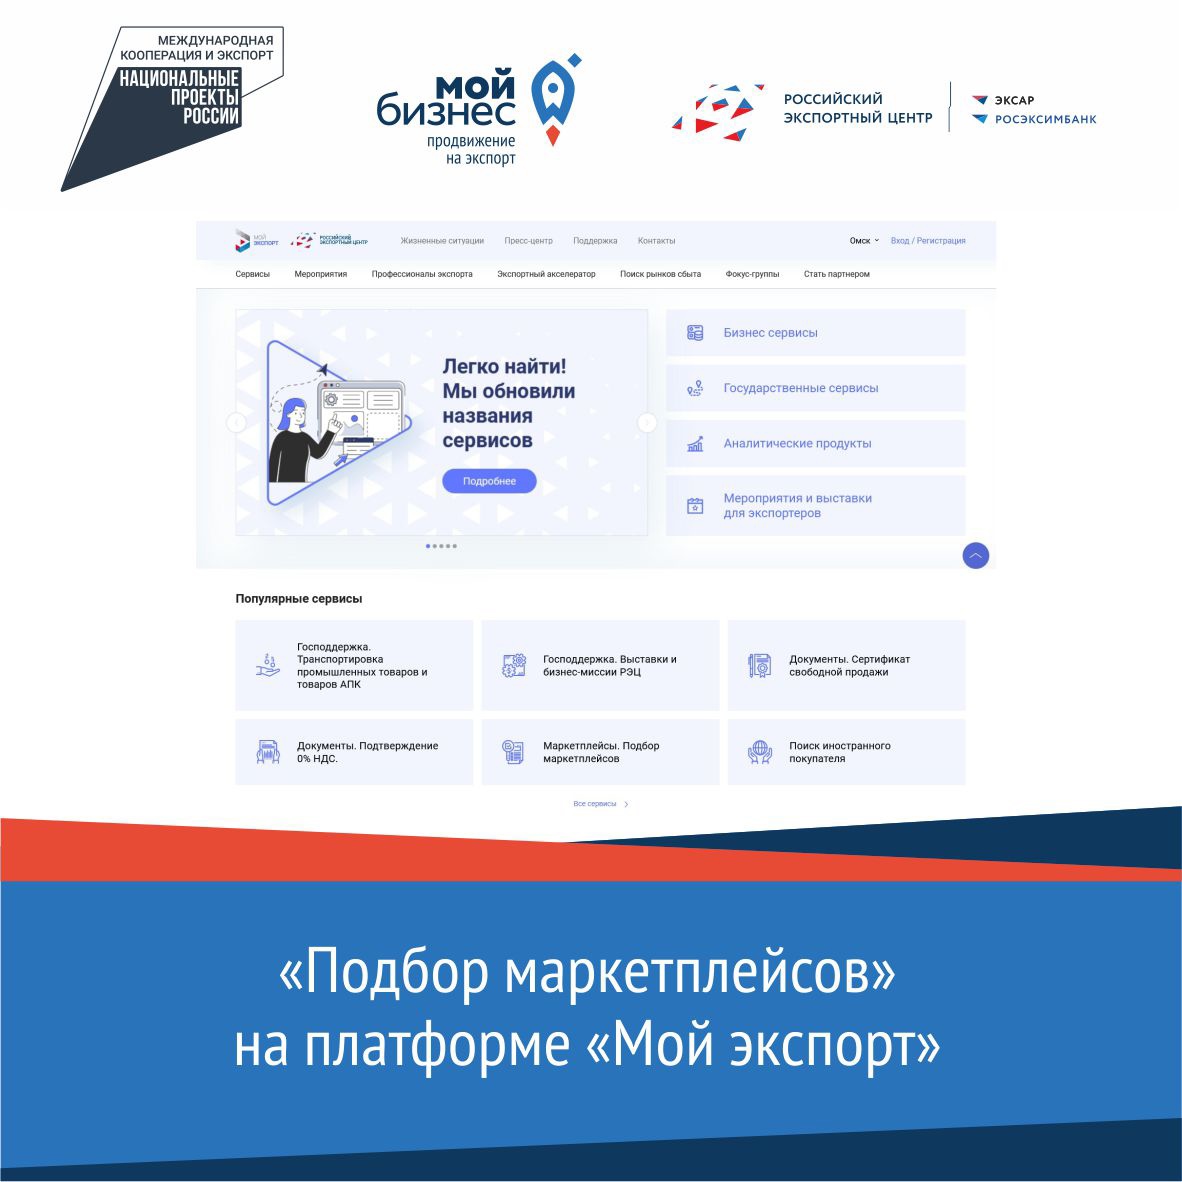 Омским экспортерам предлагают воспользоваться специальными сервисами на платформе «Мой экспорт»